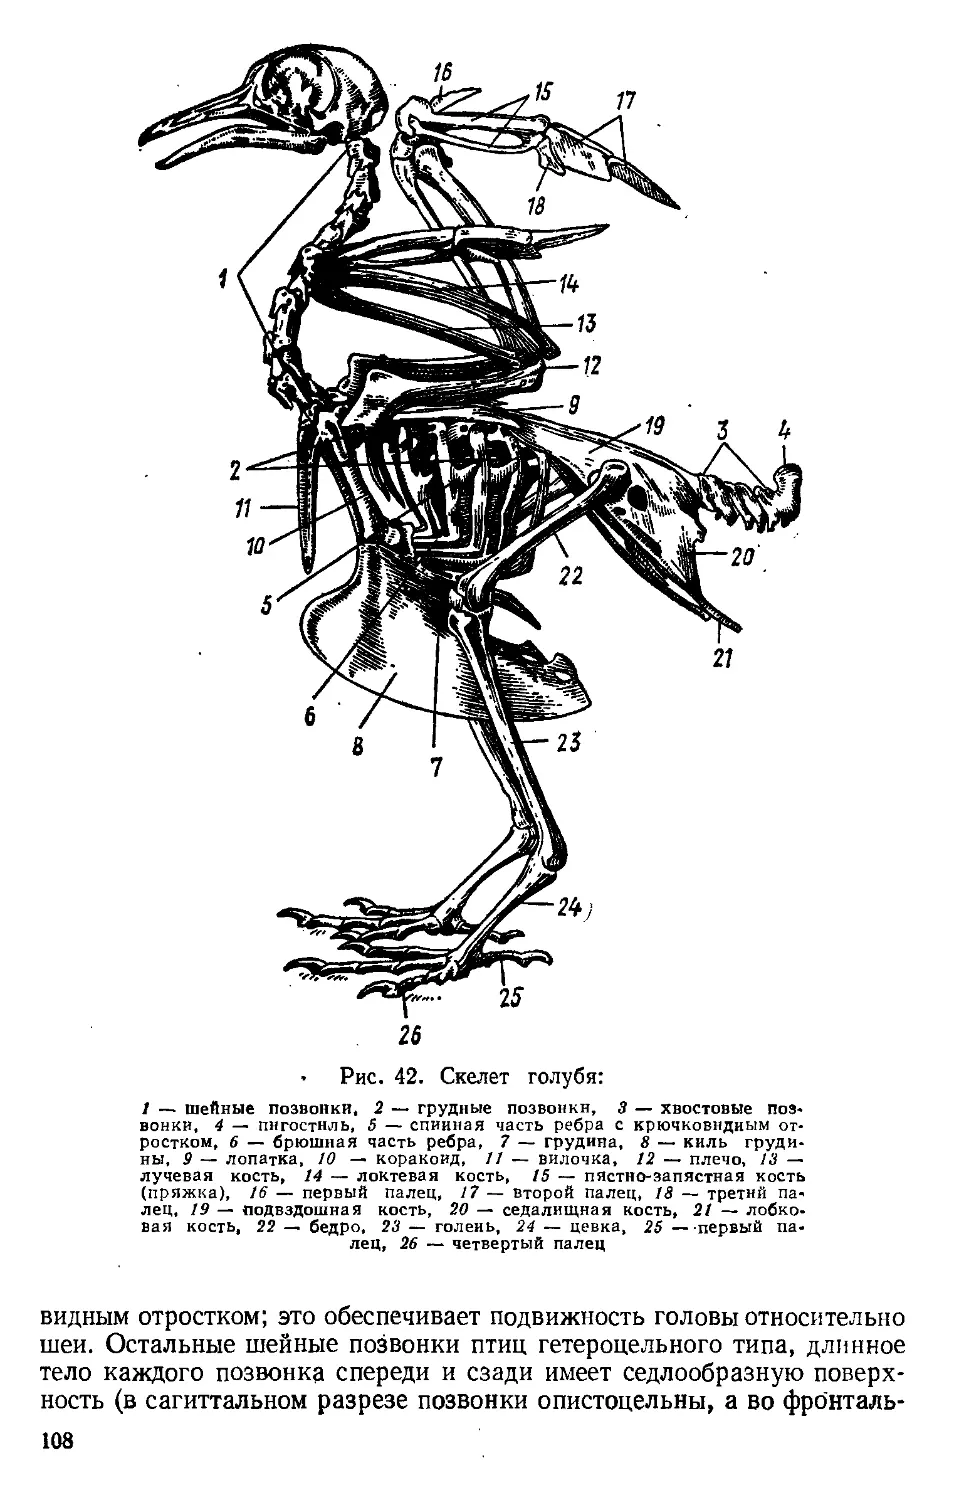 Скелет конечностей у птиц состоит из. Скелет сизого голубя биология. Скелет туловища сизого голубя. Скелет поясов конечностей птиц. Скелет туловища птицы сбоку.